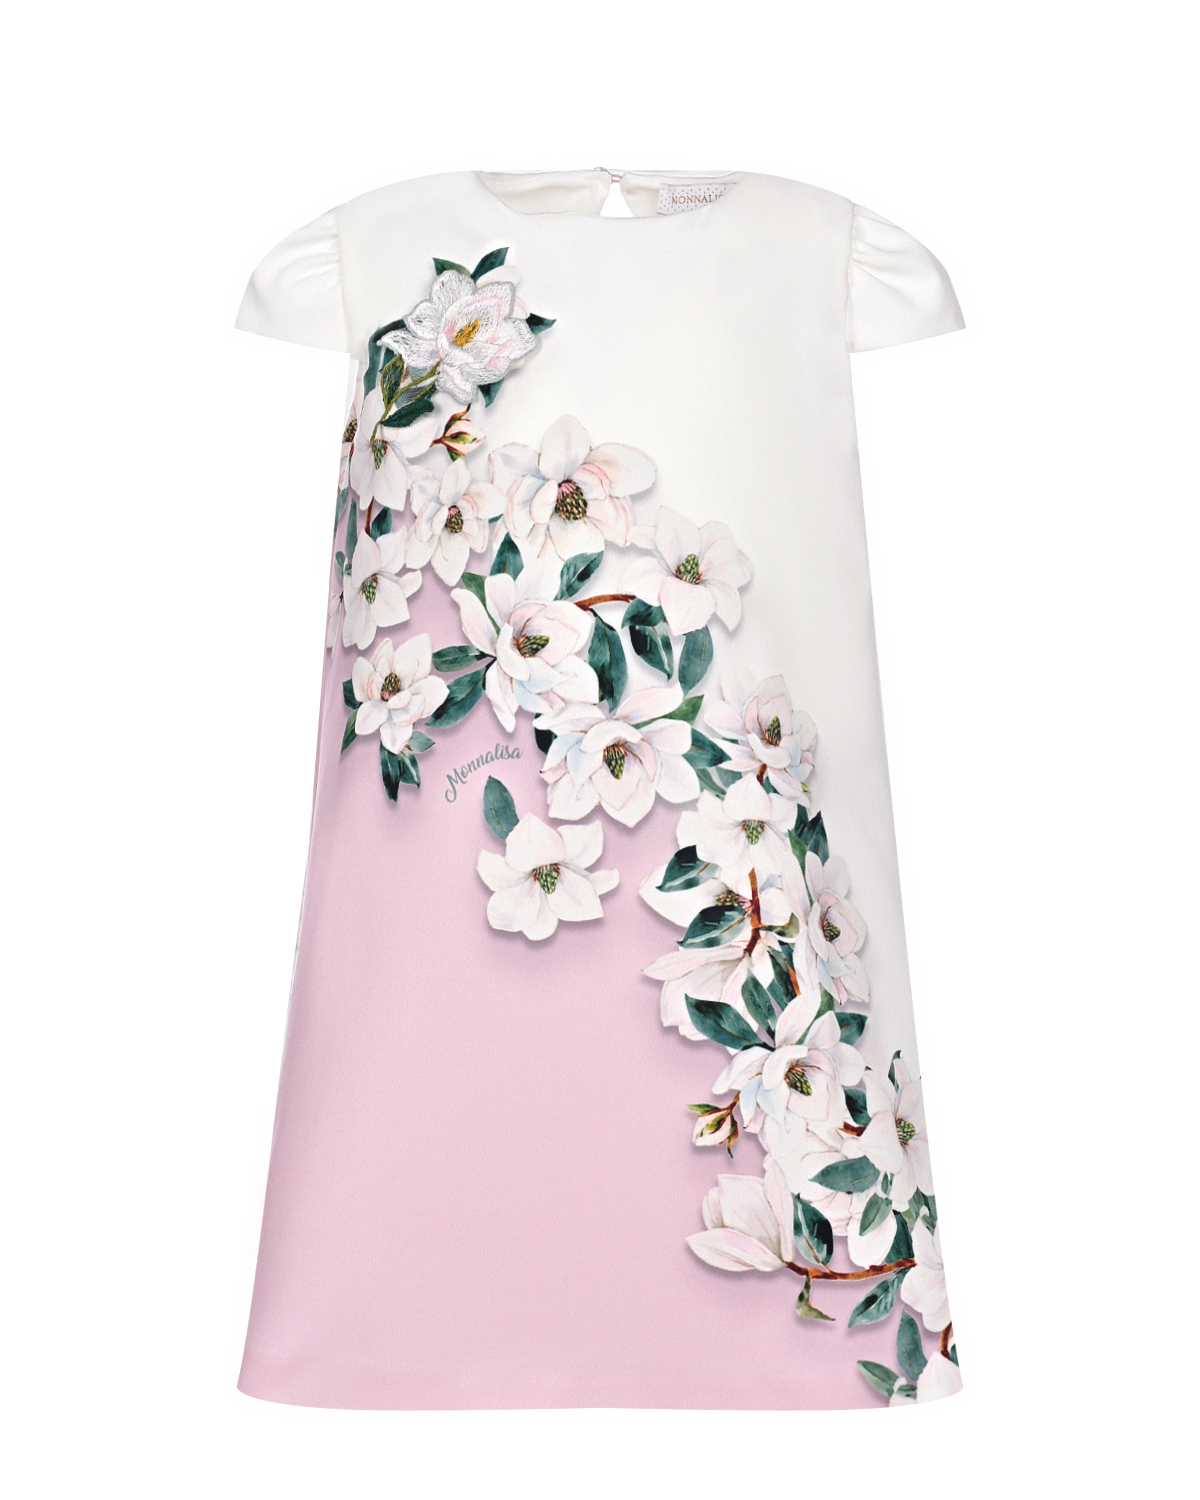 Бело-розовое платье с цветочным принтом Monnalisa розовое многослойное платье gulliver 158